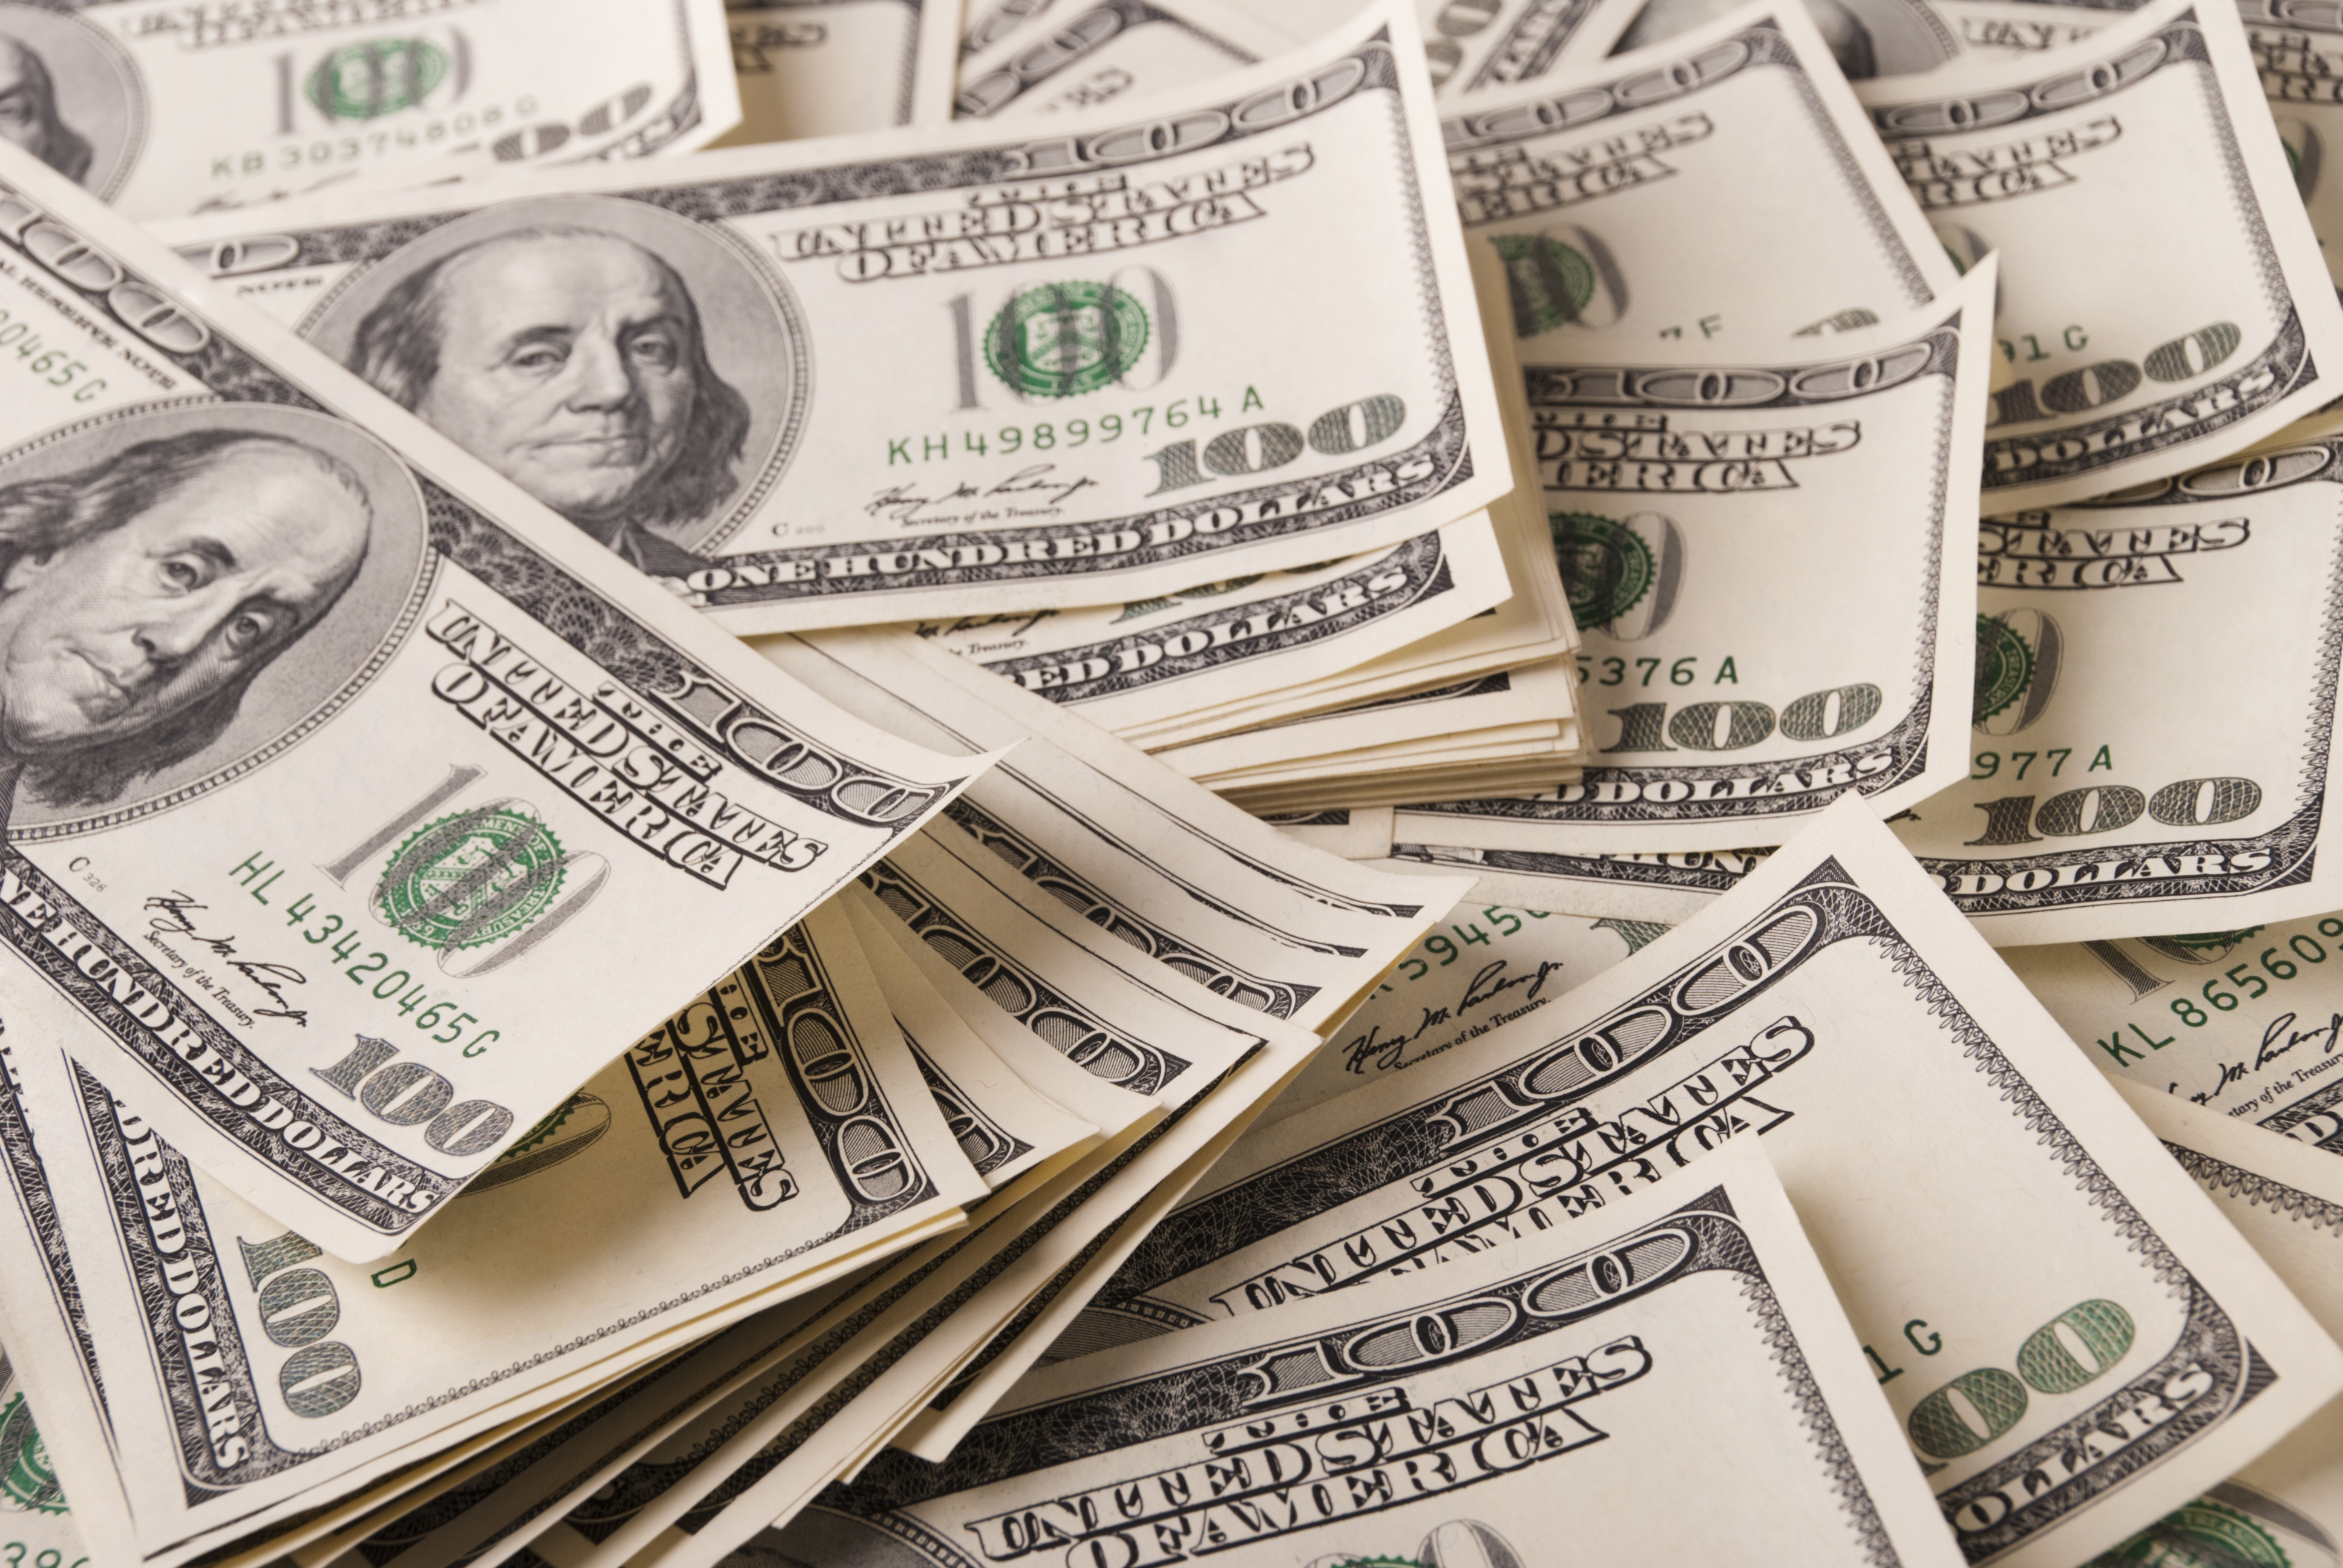 Ein Stapel von Hundert-Dollar-Scheinen | Quelle: Shutterstock